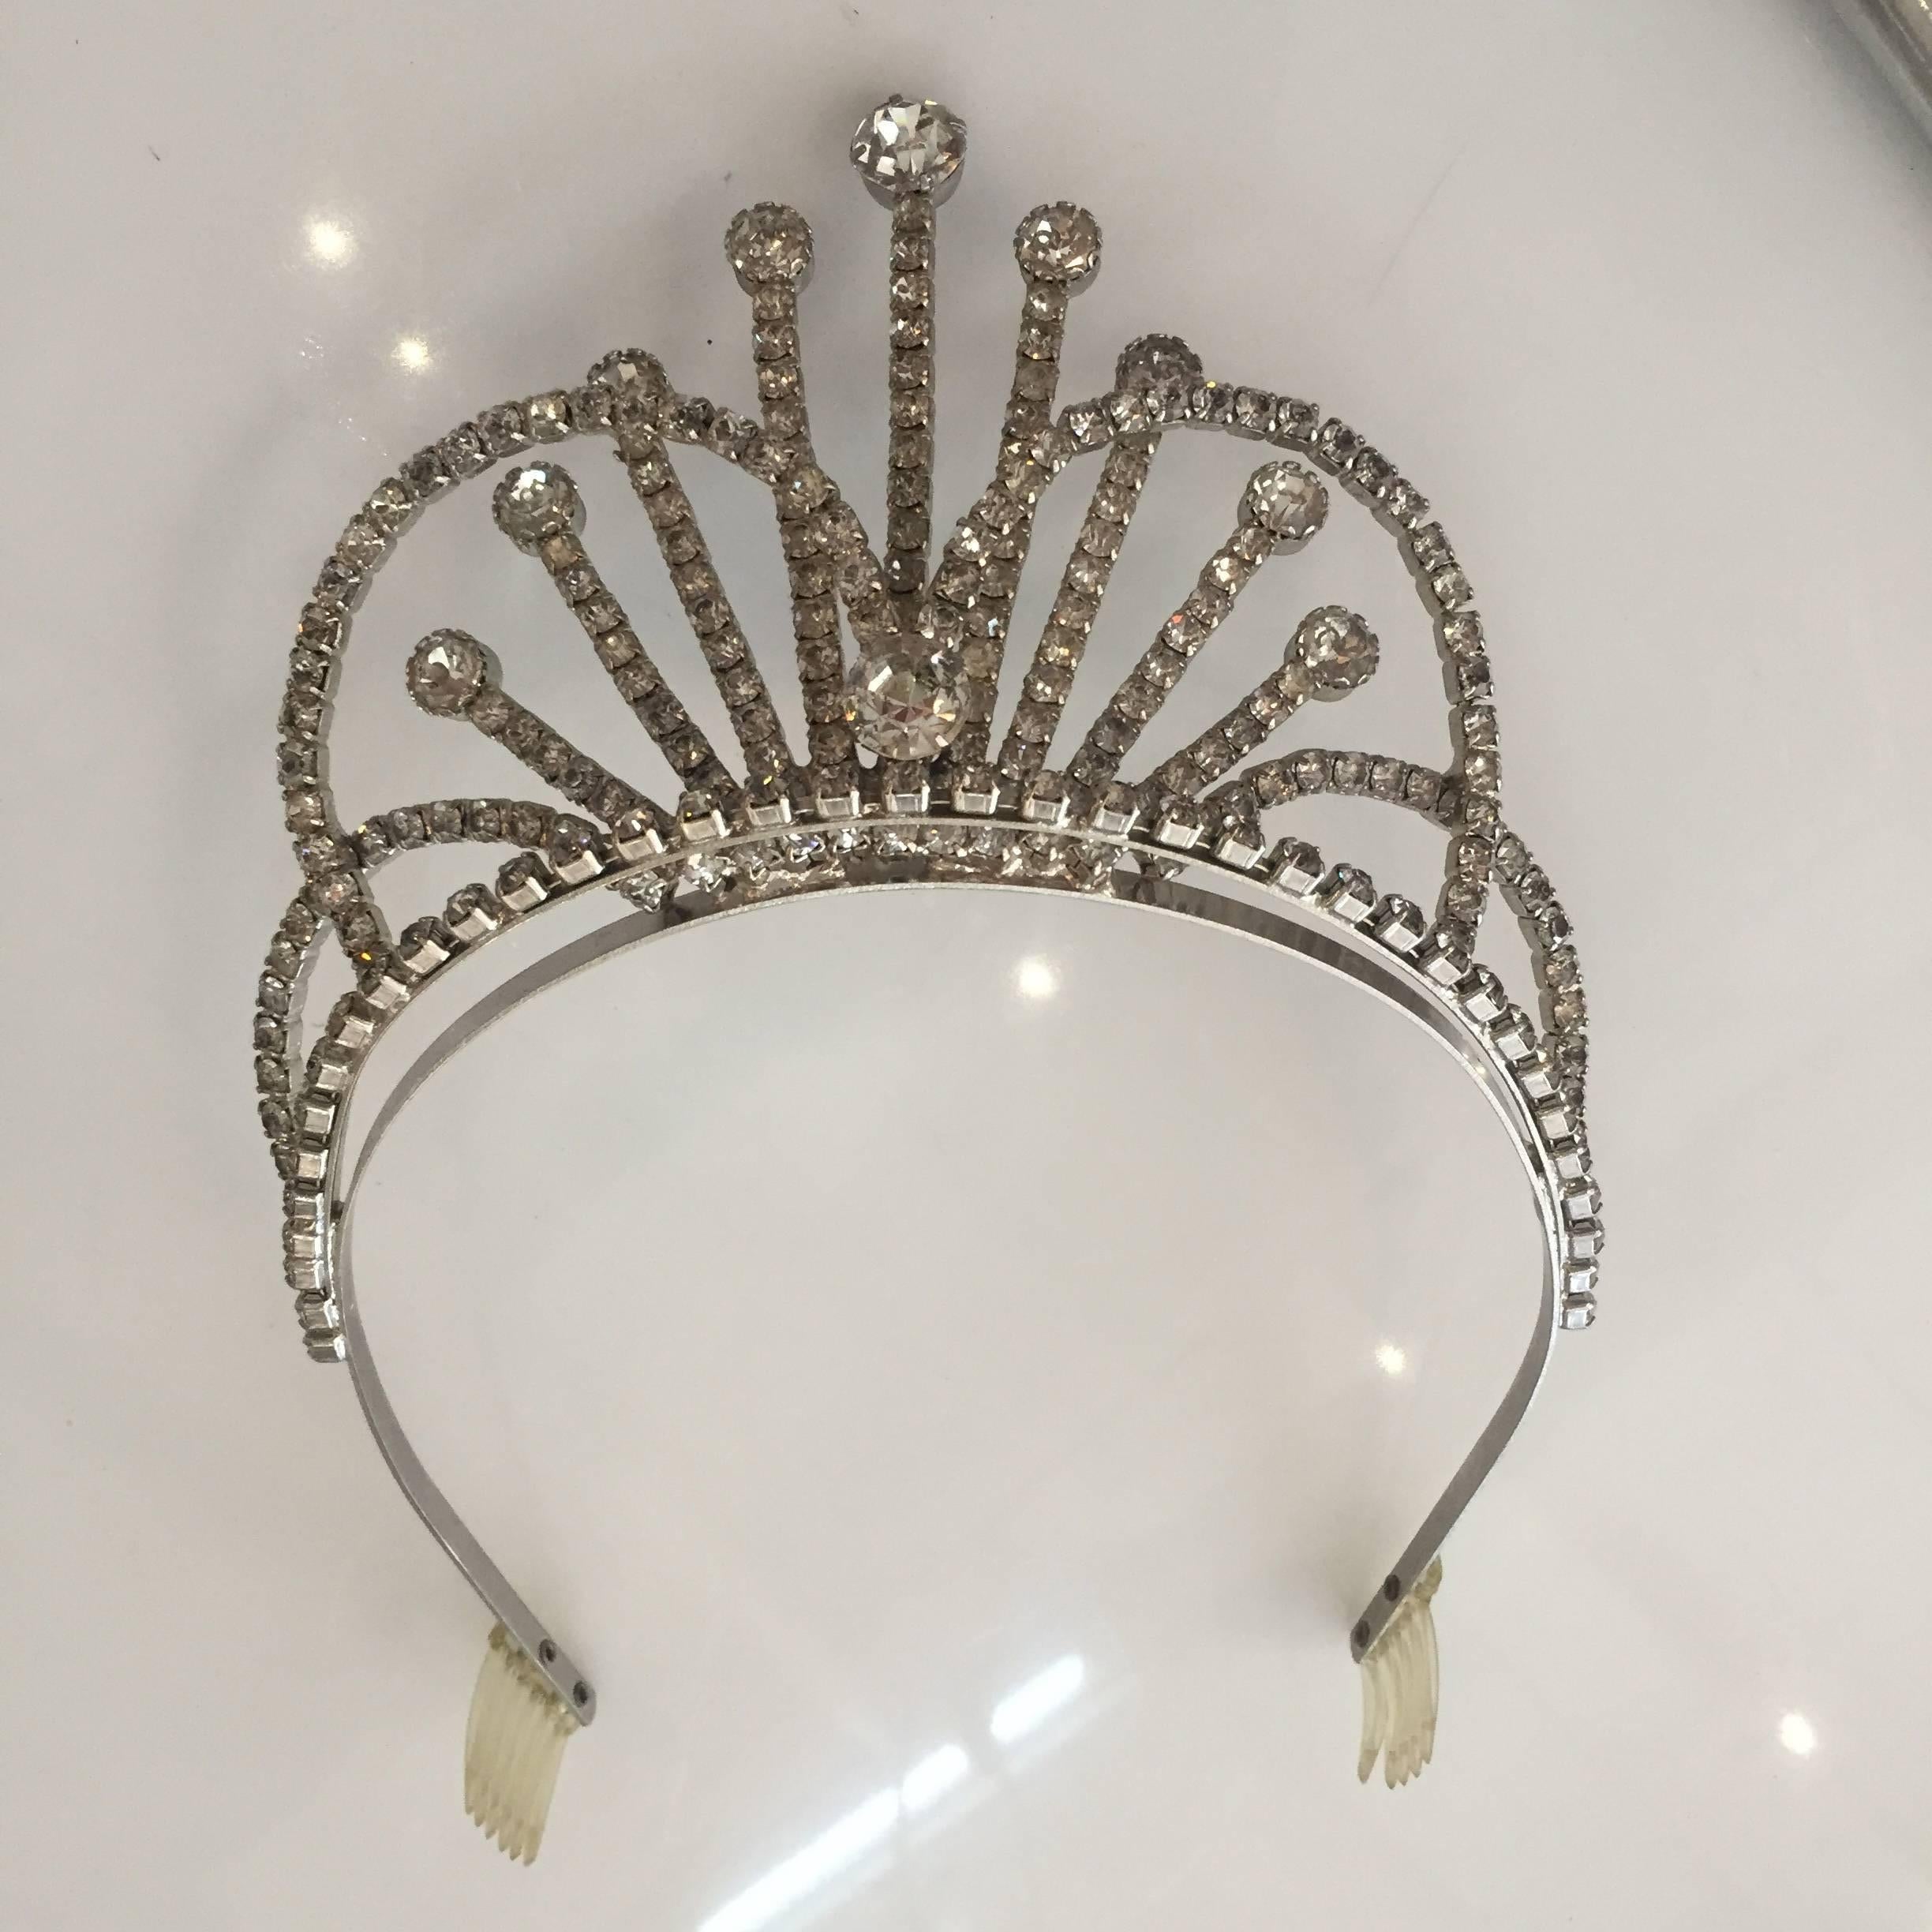 American Rhinestone Tiara Wedding Crown, circa 1950